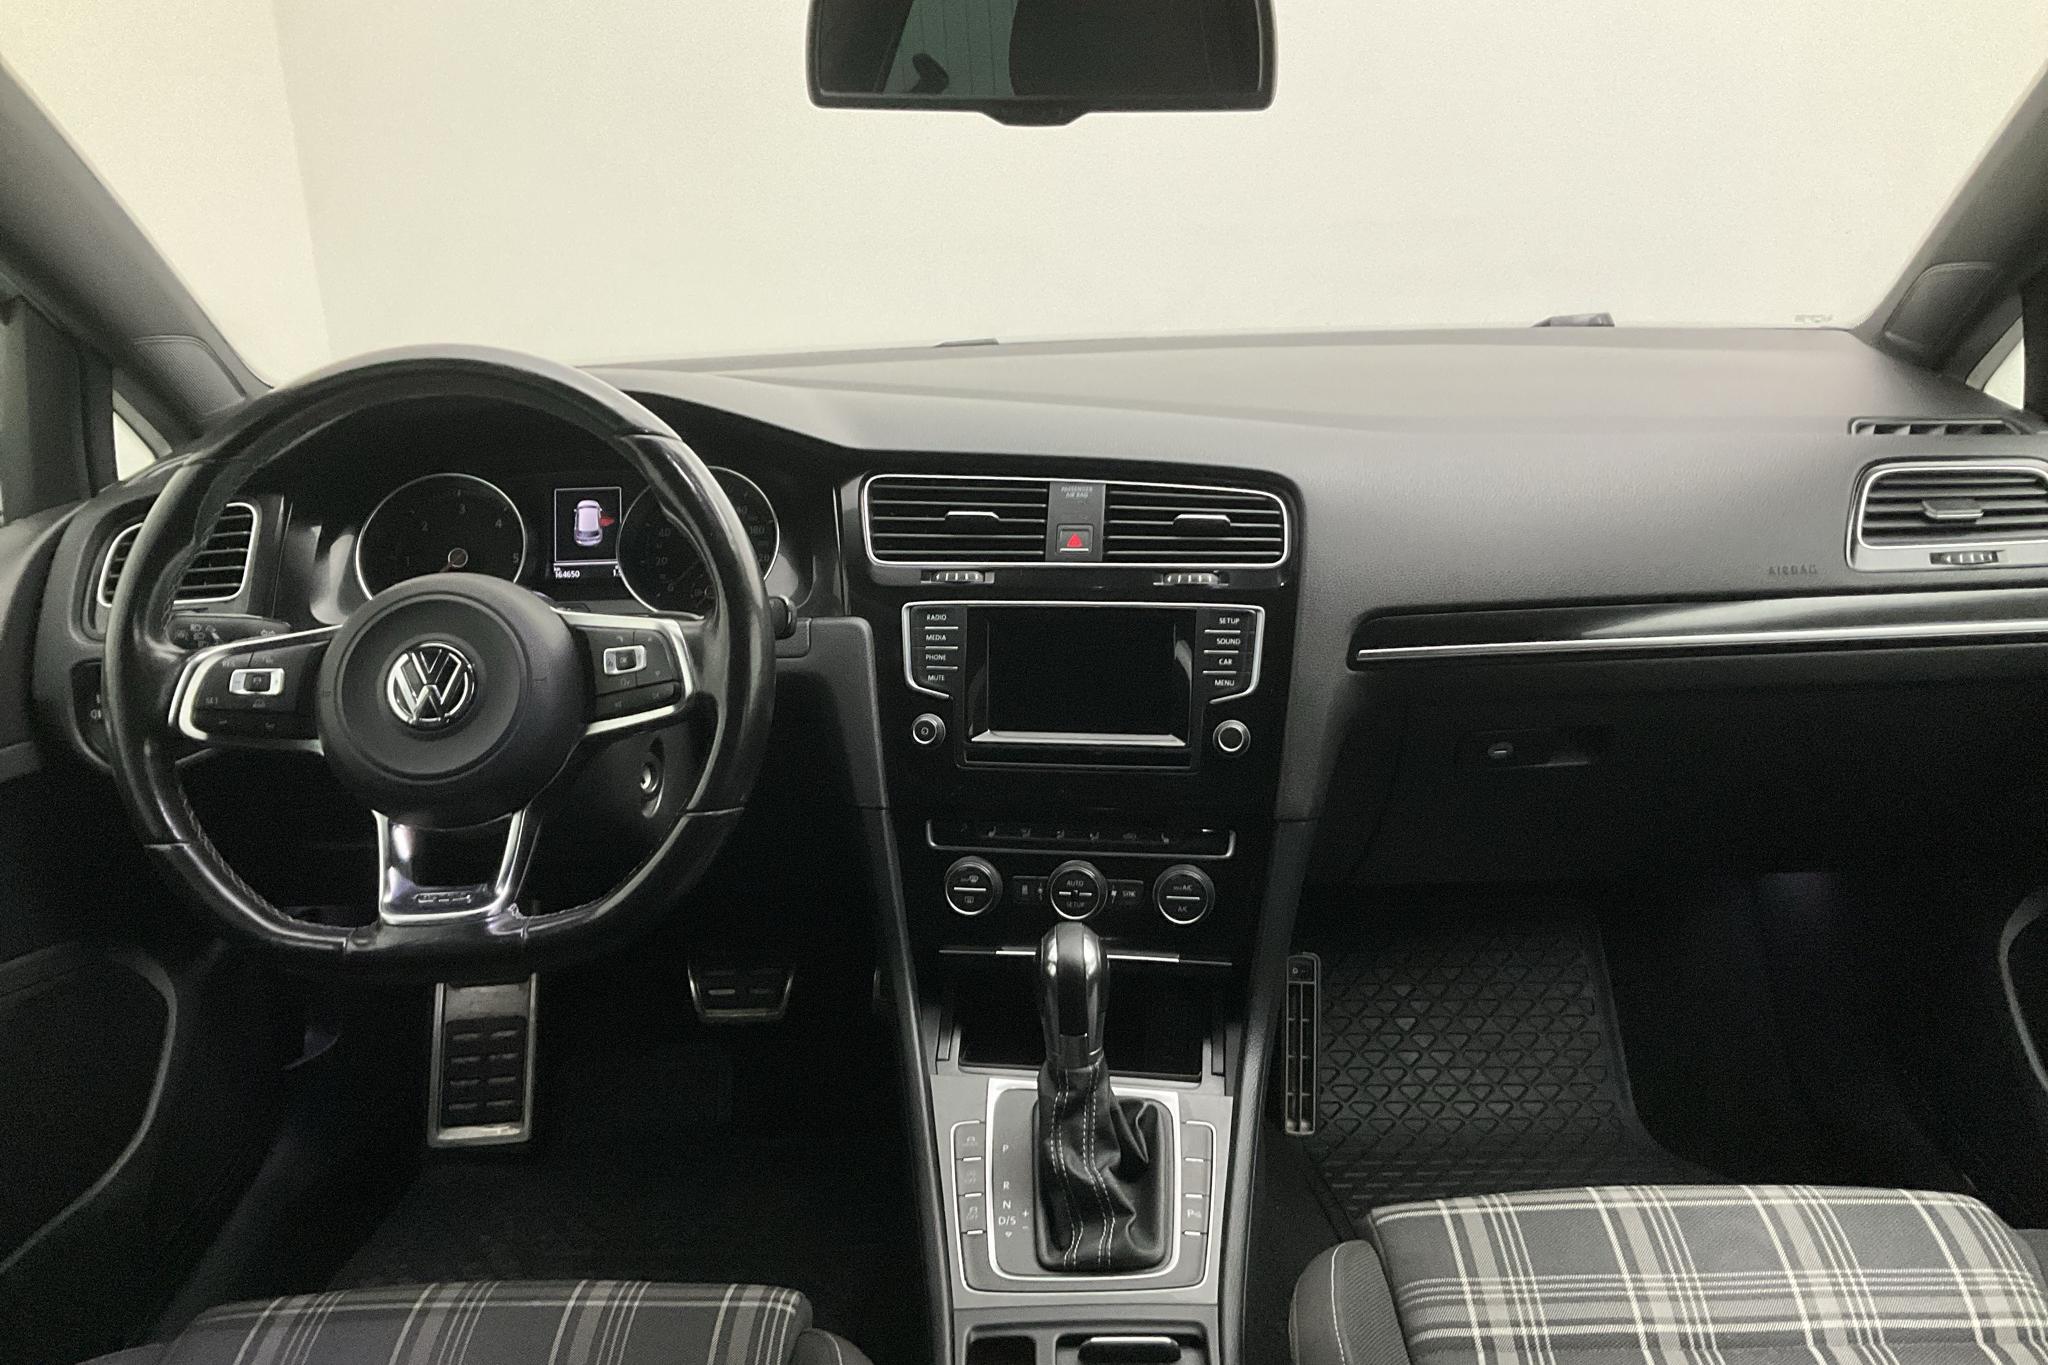 VW Golf VII GTD 2.0 5dr (184hk) - 16 465 mil - Automat - silver - 2014